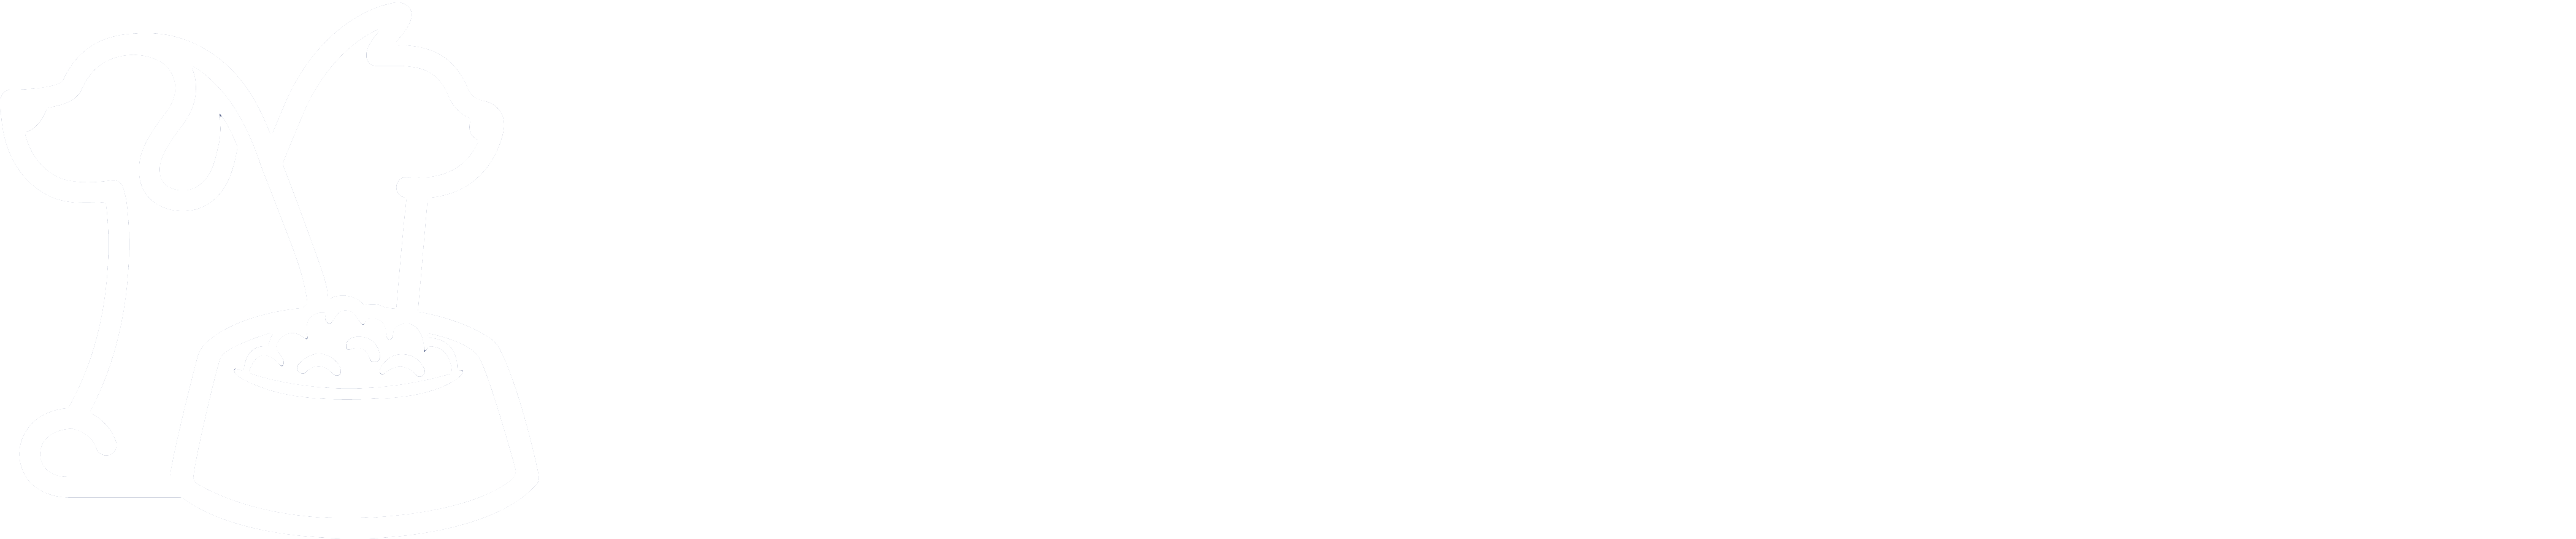 CROC29 - EARL CCFJS